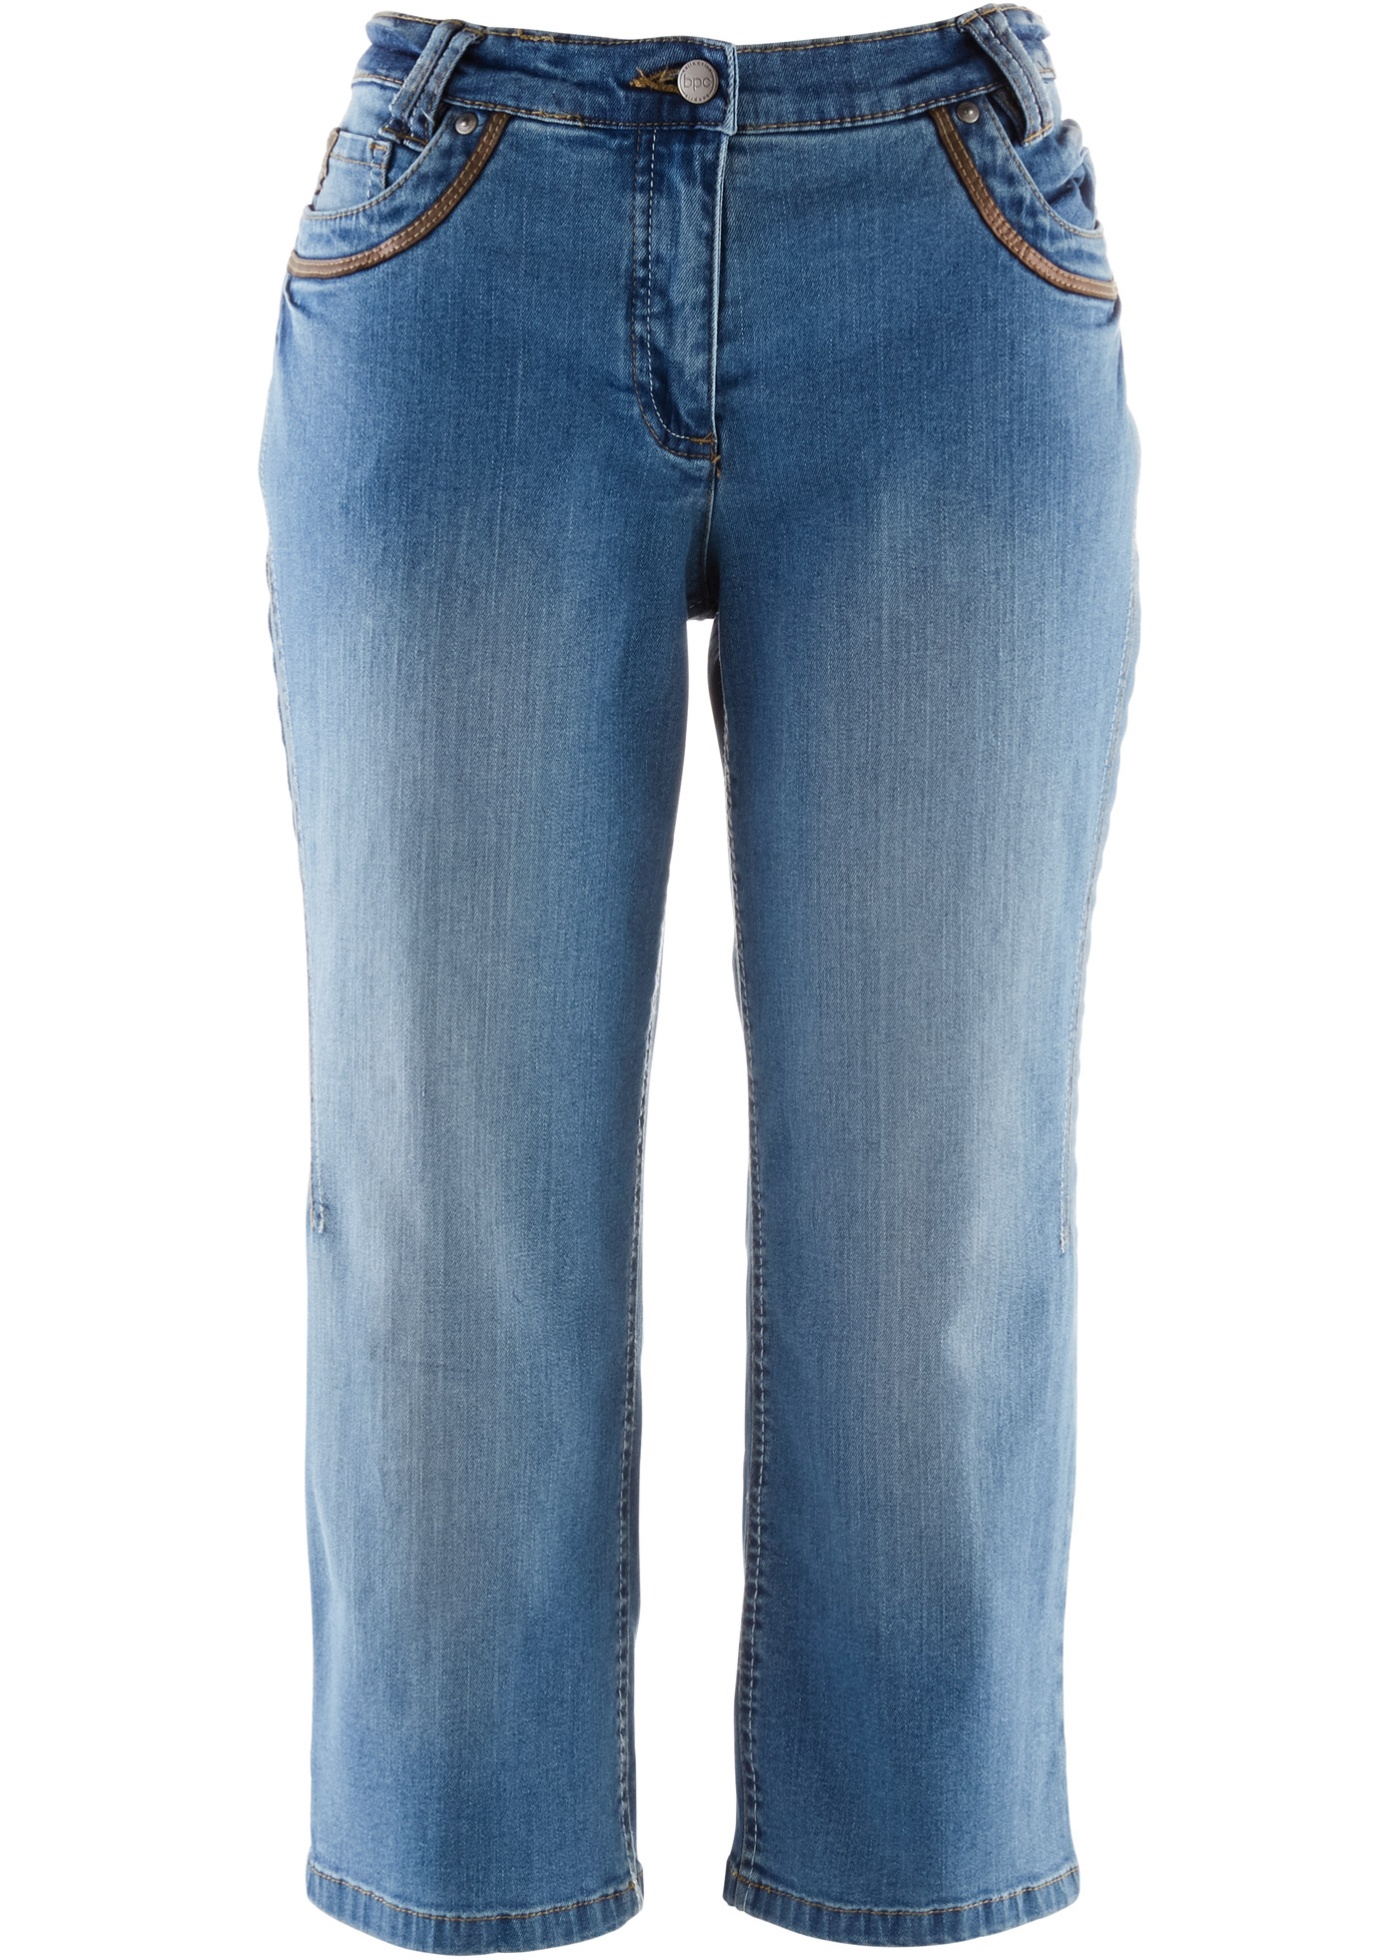 Katoenen capri jeans met comfortband, slim fit